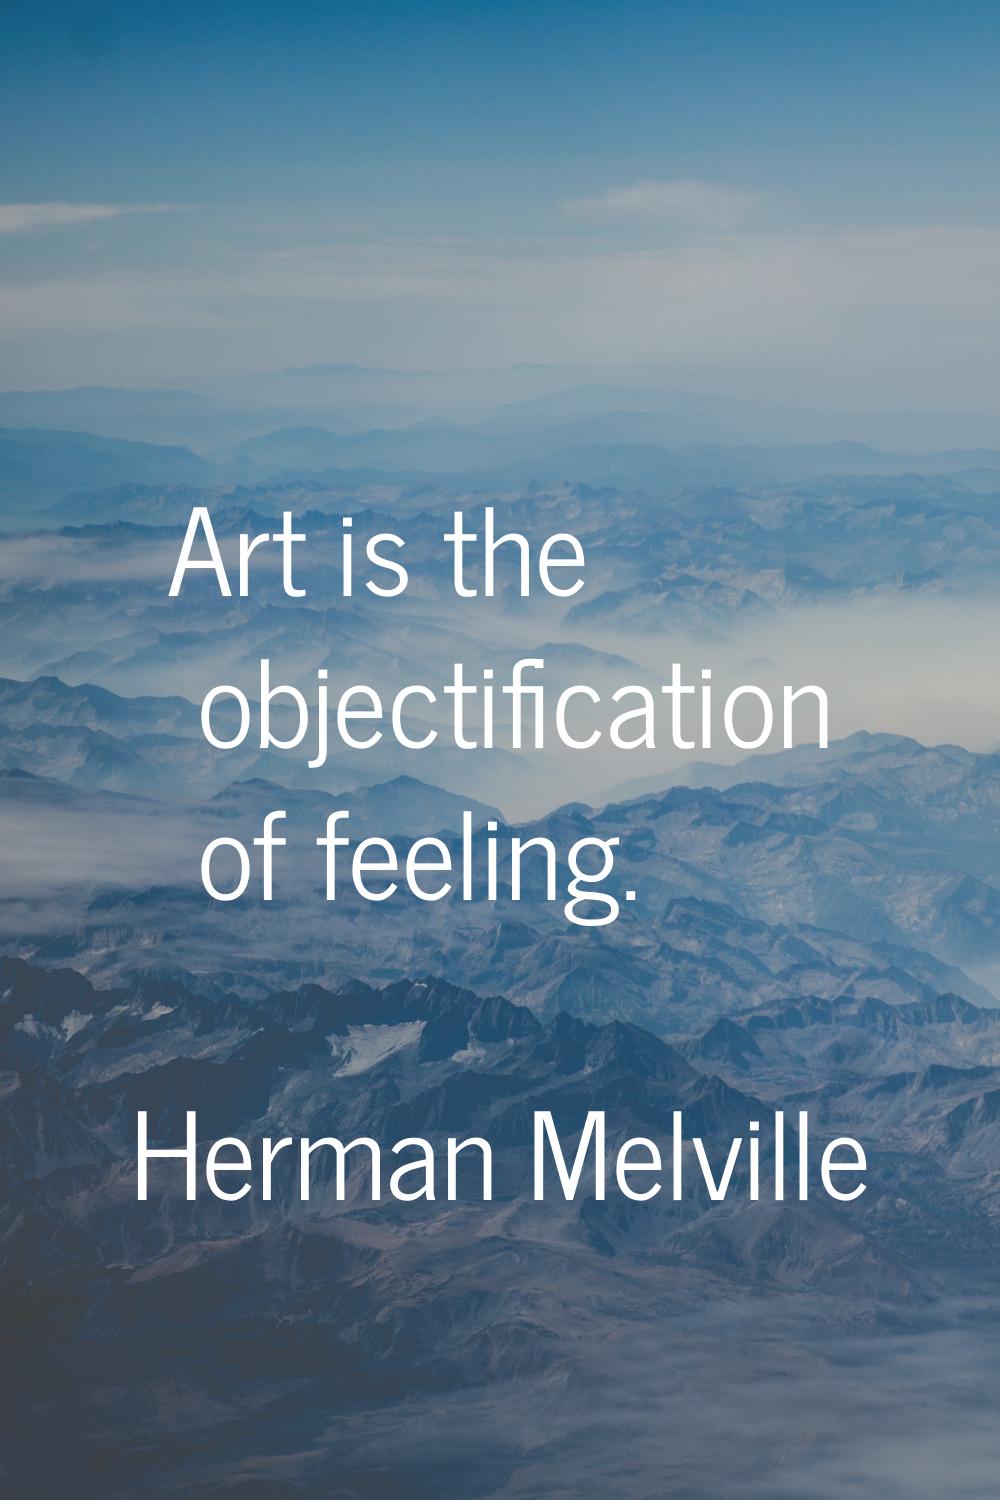 Art is the objectification of feeling.